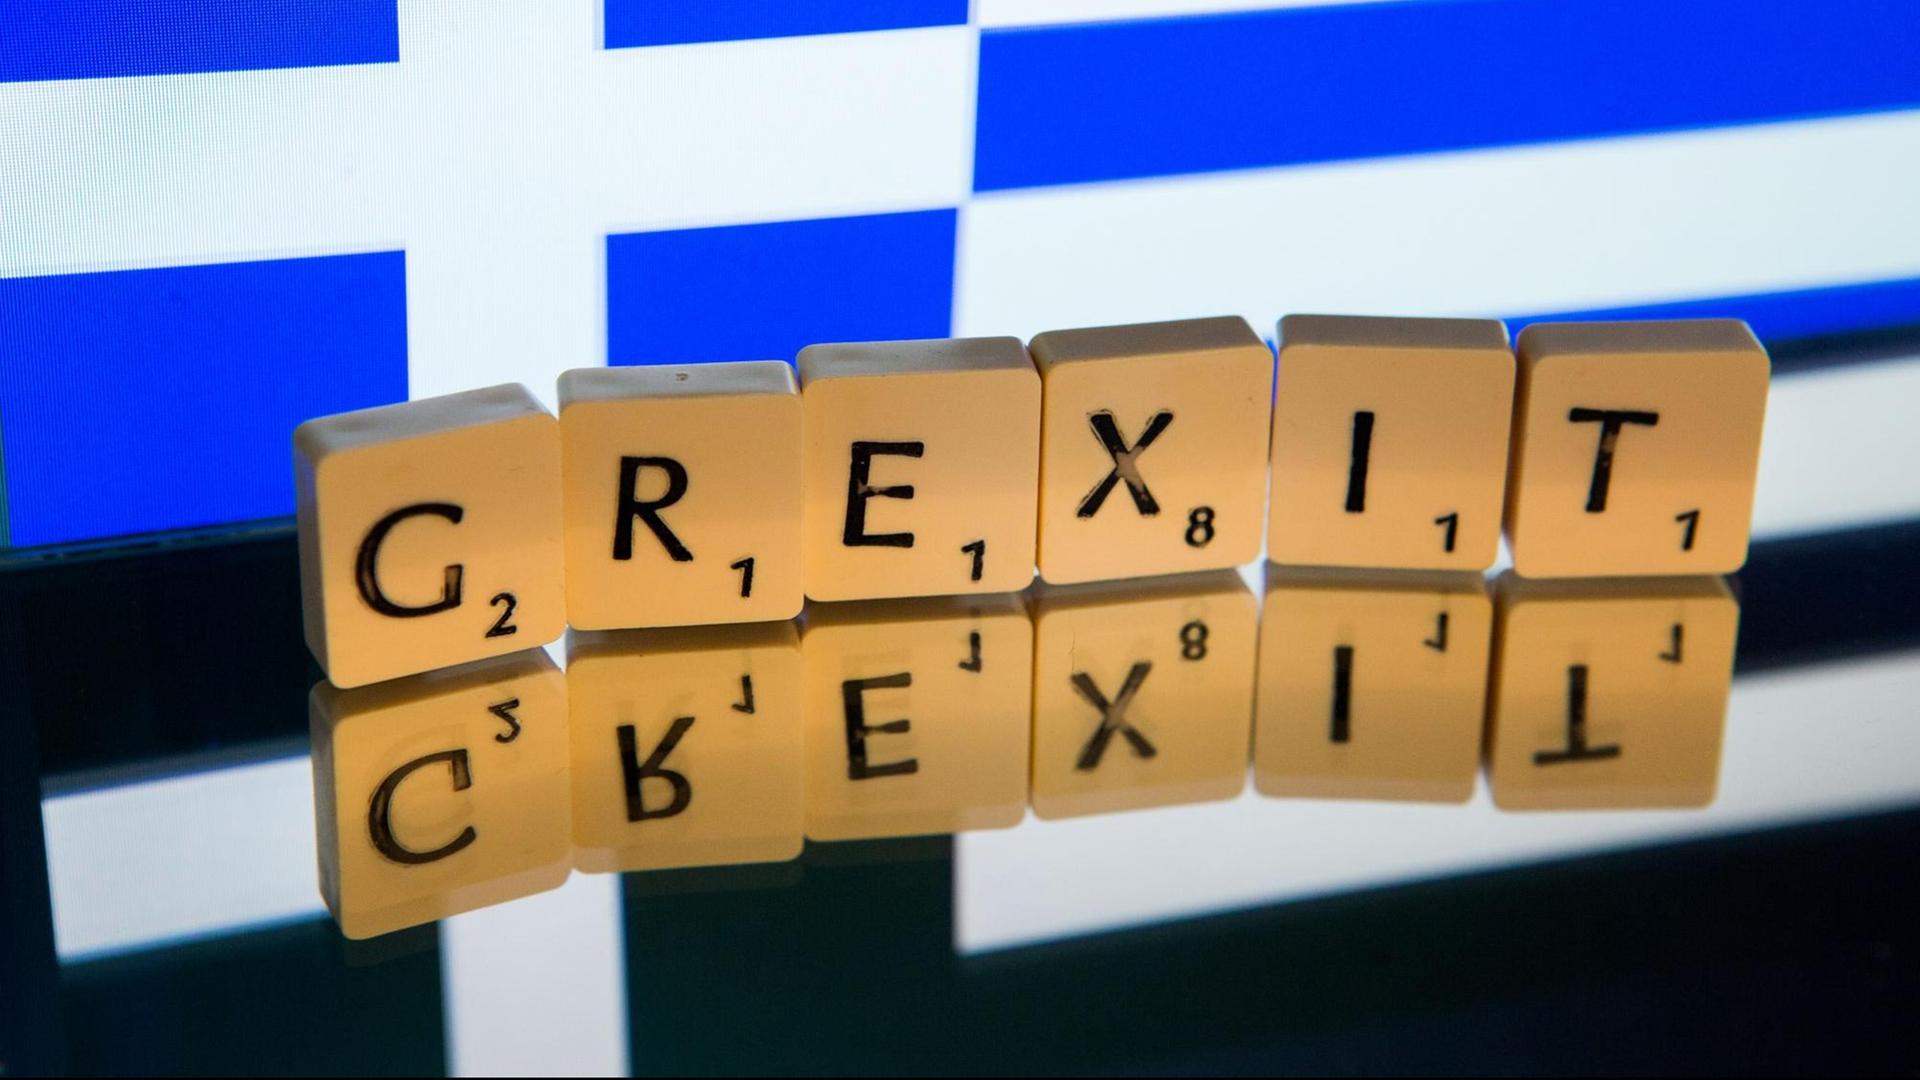 Aus Scrabble-Buchstaben ist der Schriftzug GREXIT zusammengestellt.